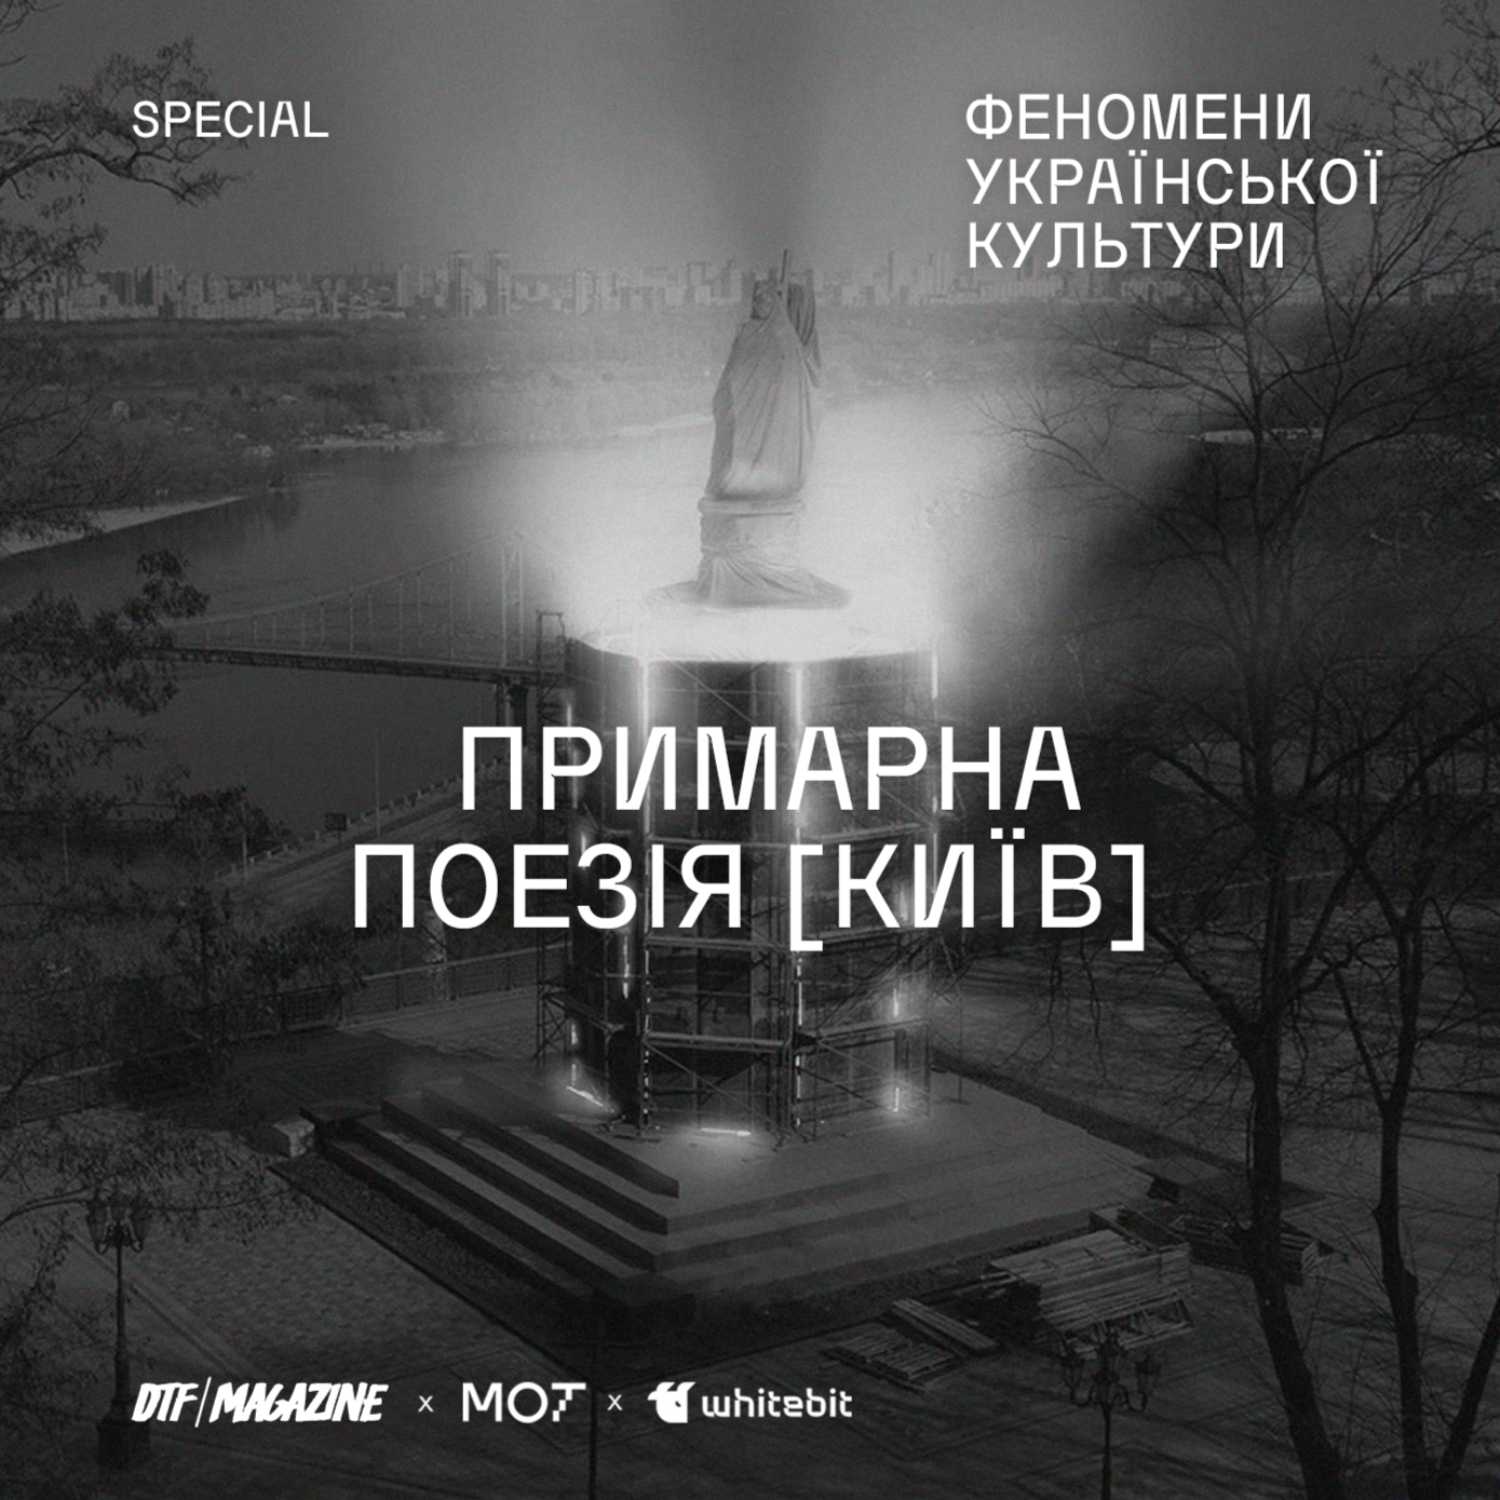 Special: «Примарна поезія [Київ]» та українська поезія після 2014 року